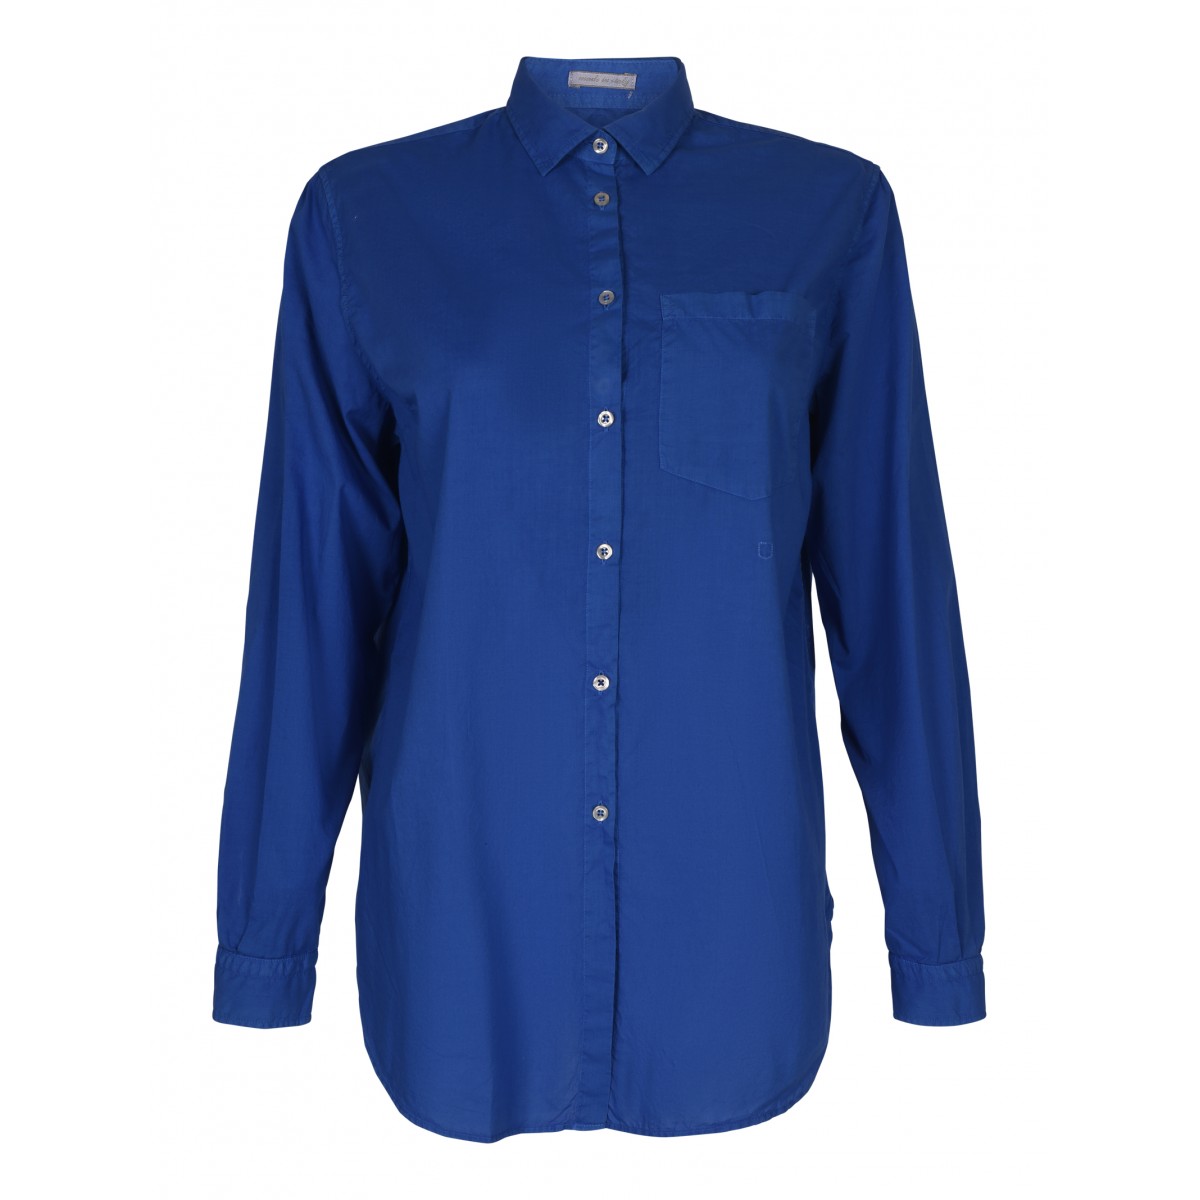 Lapis Blue Cotton Classic Shirt